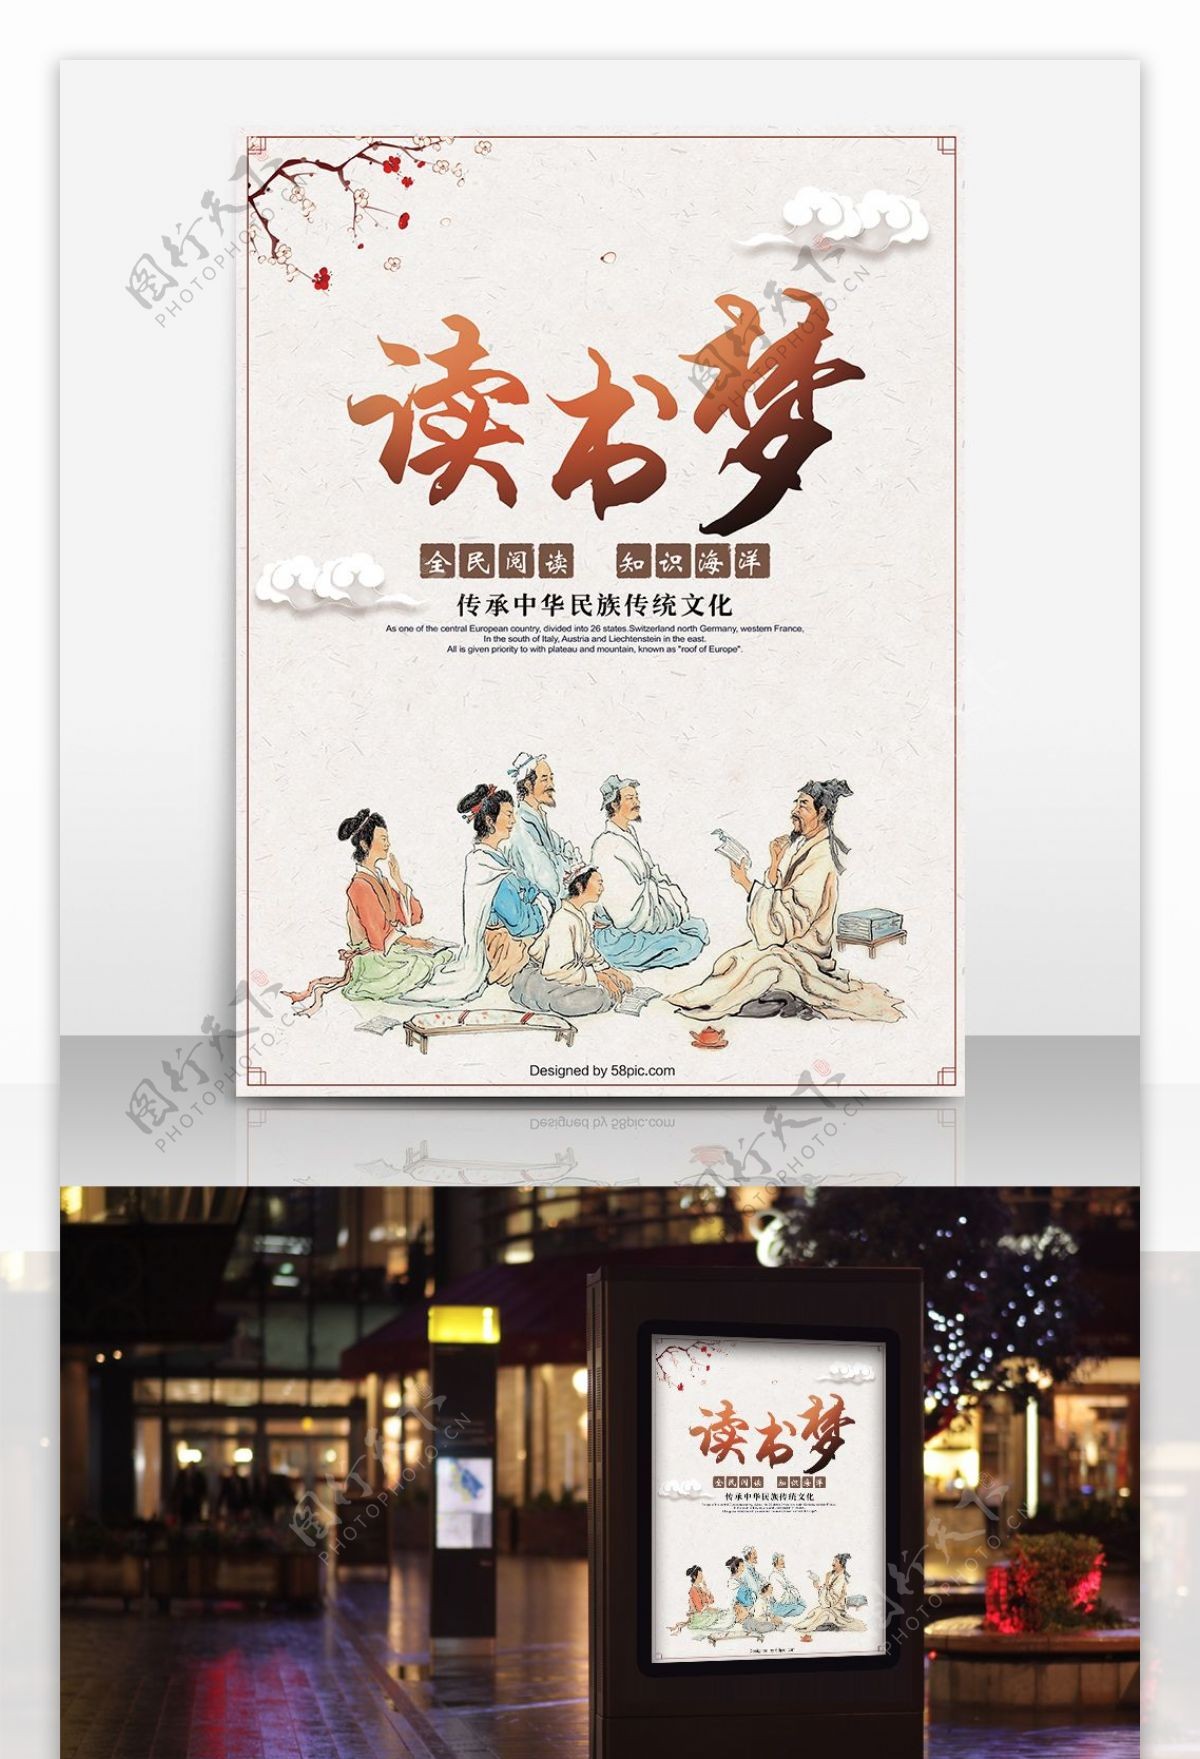 中国风全民阅读海报设计